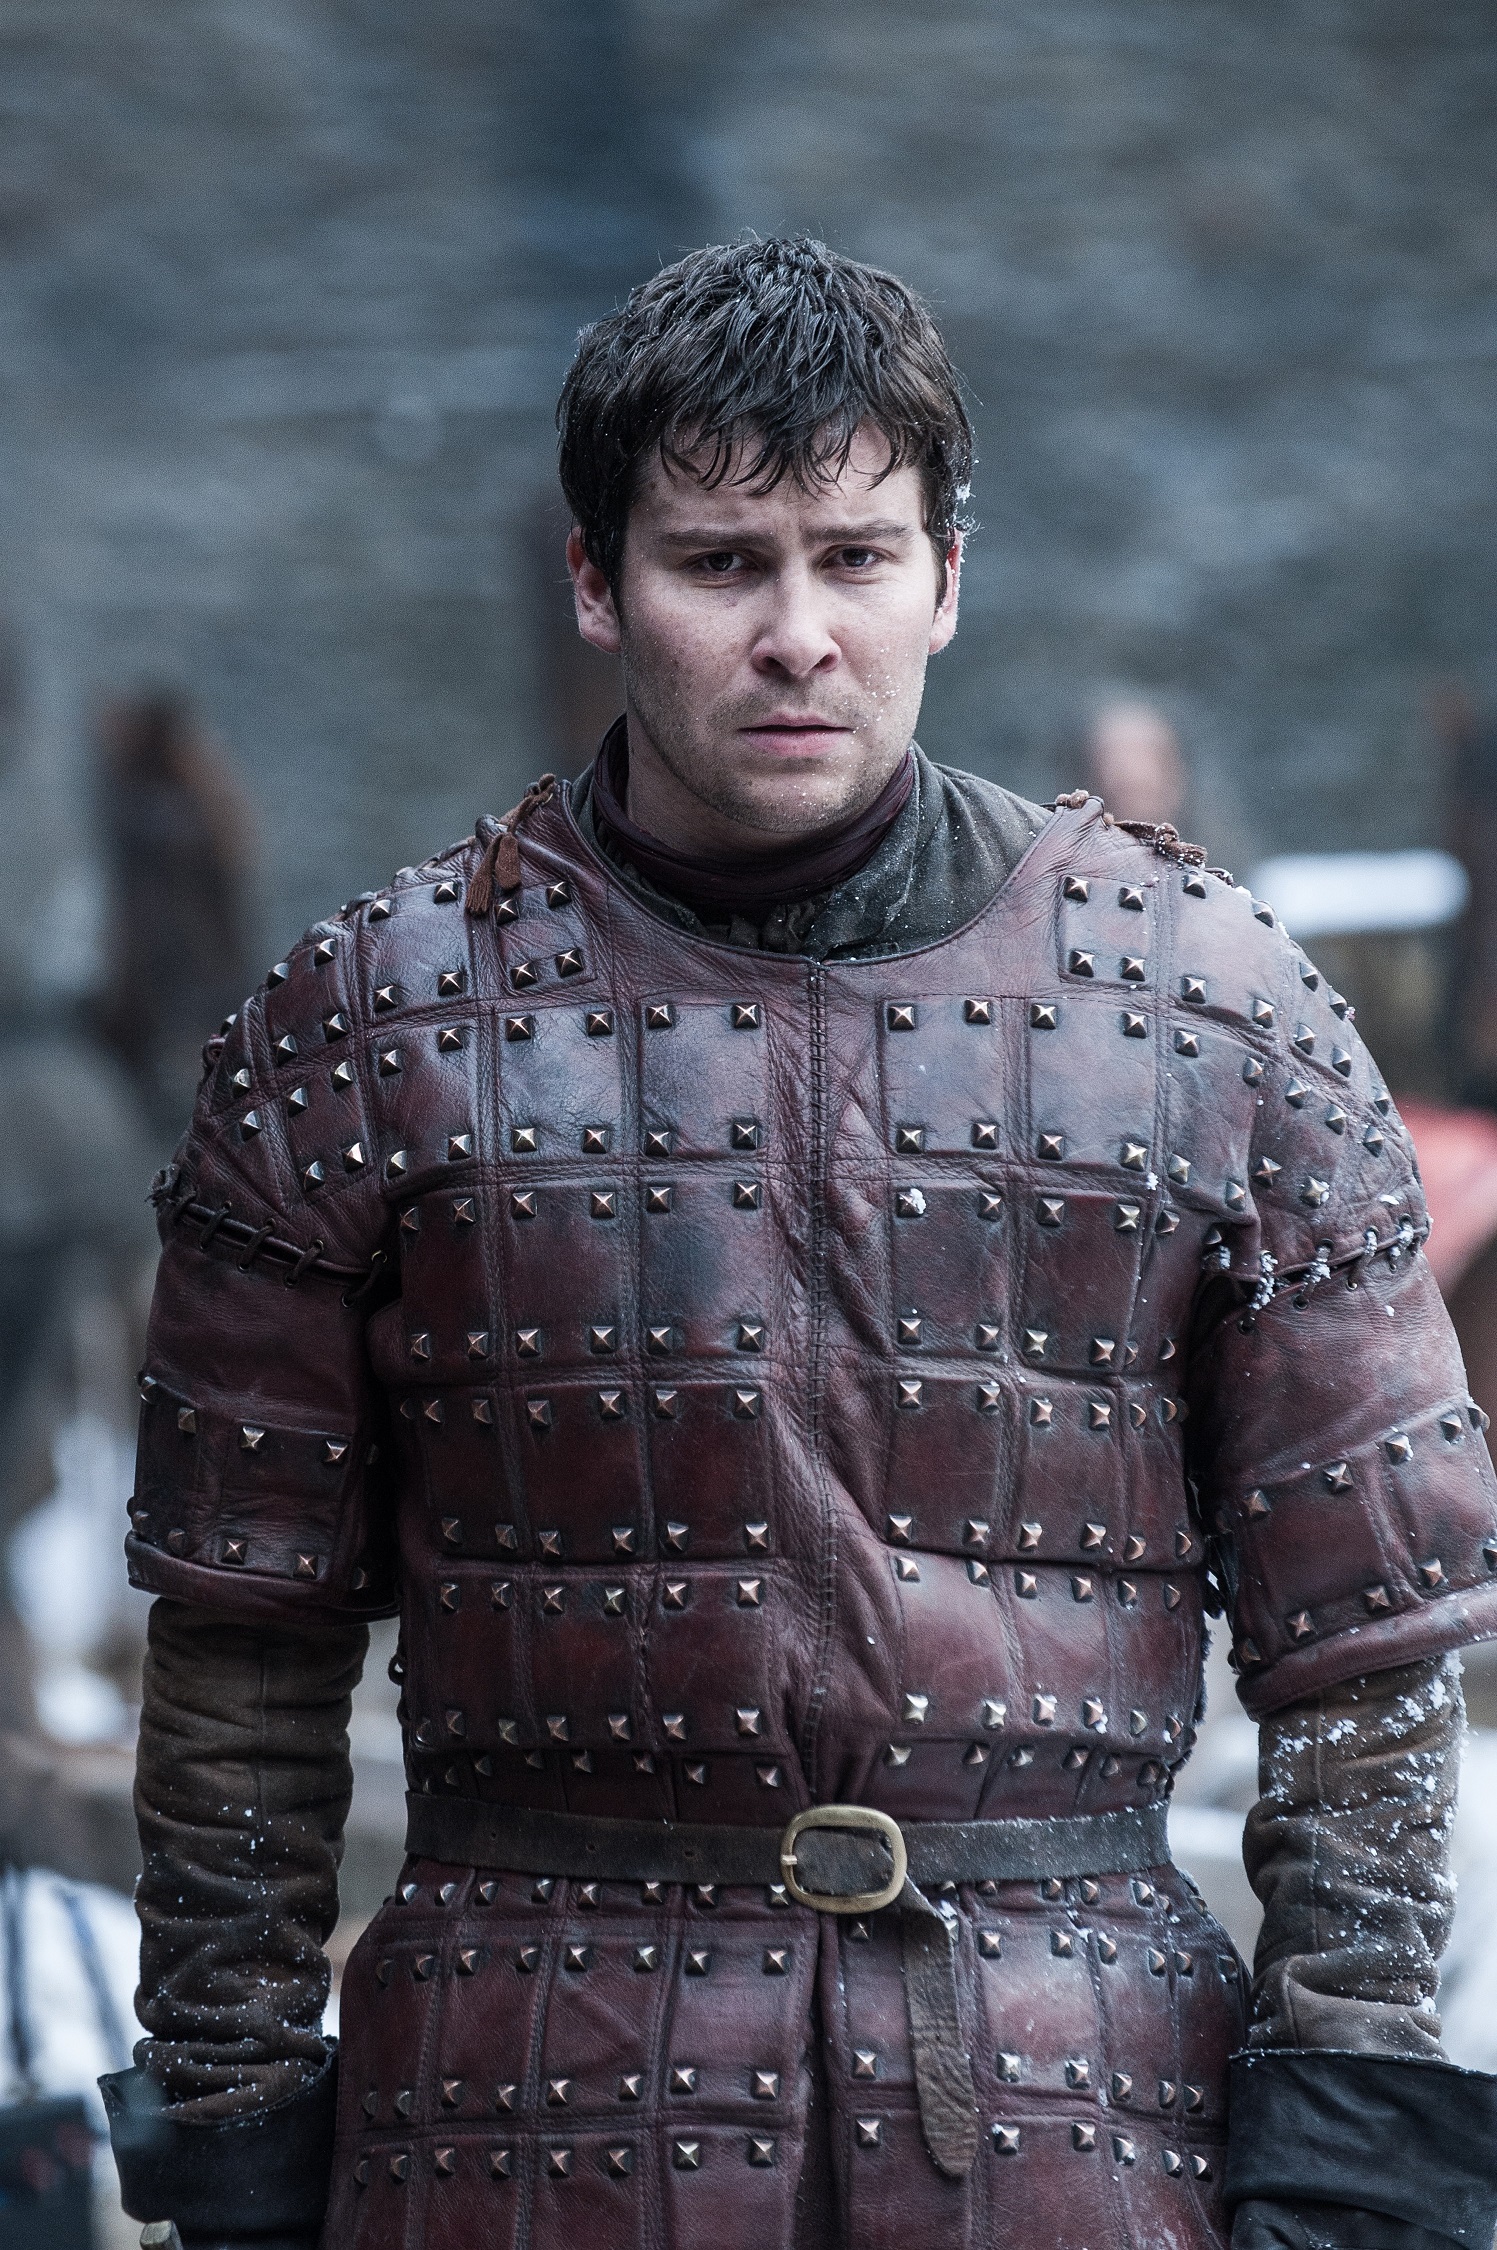 Daniel Portman as Podrick Payne in Winterfell. Photo: HBO